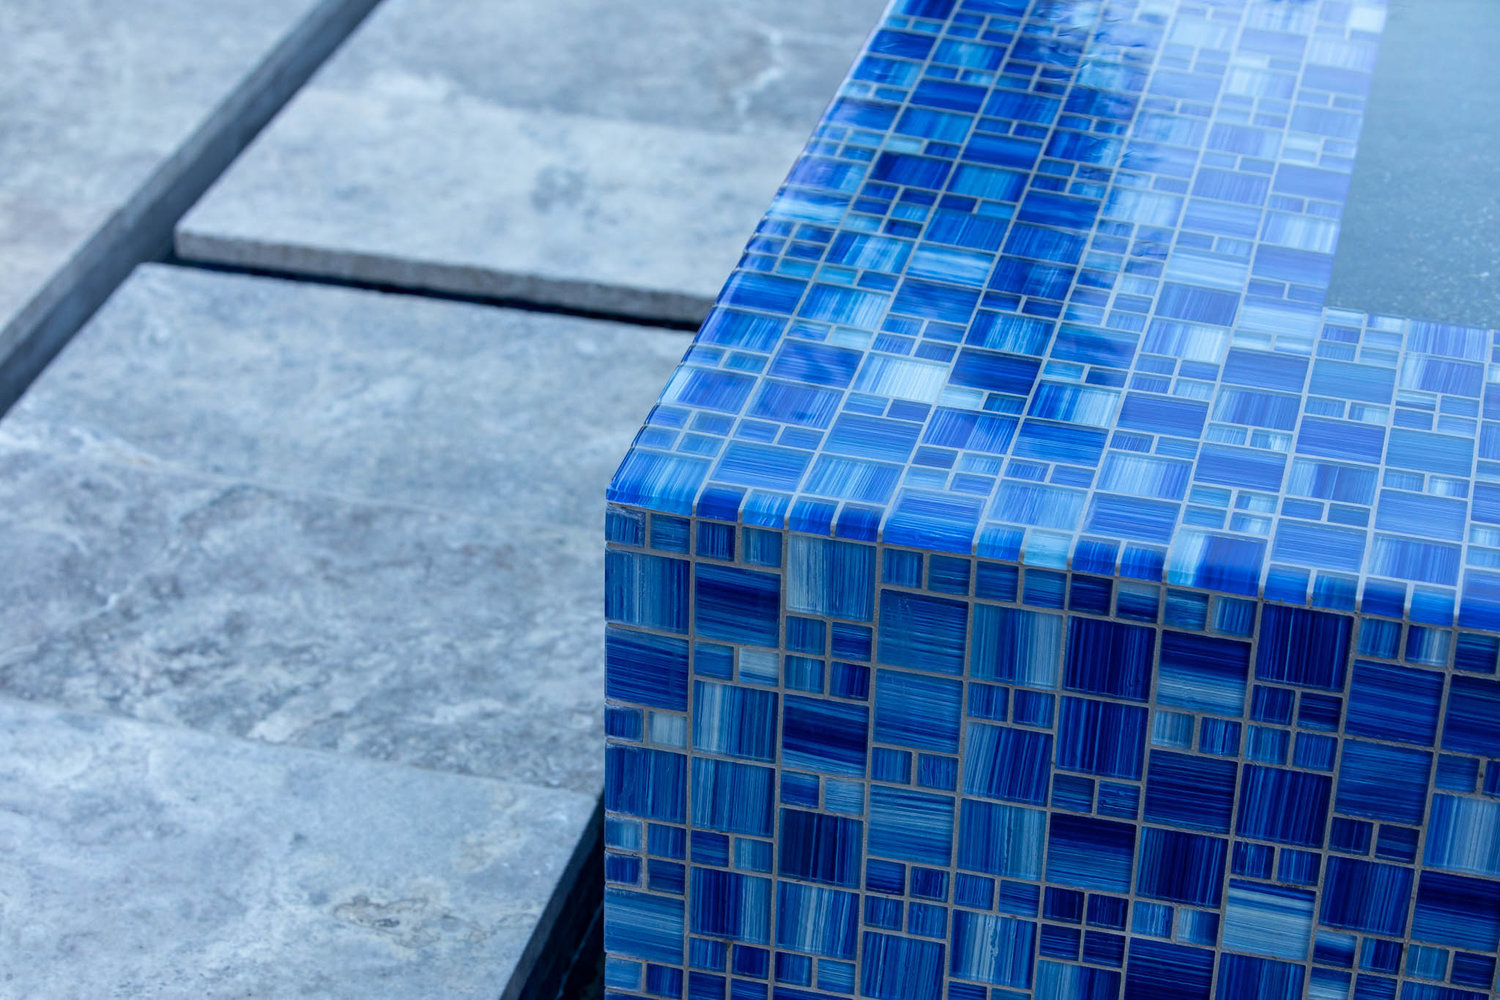 decorative blue tile